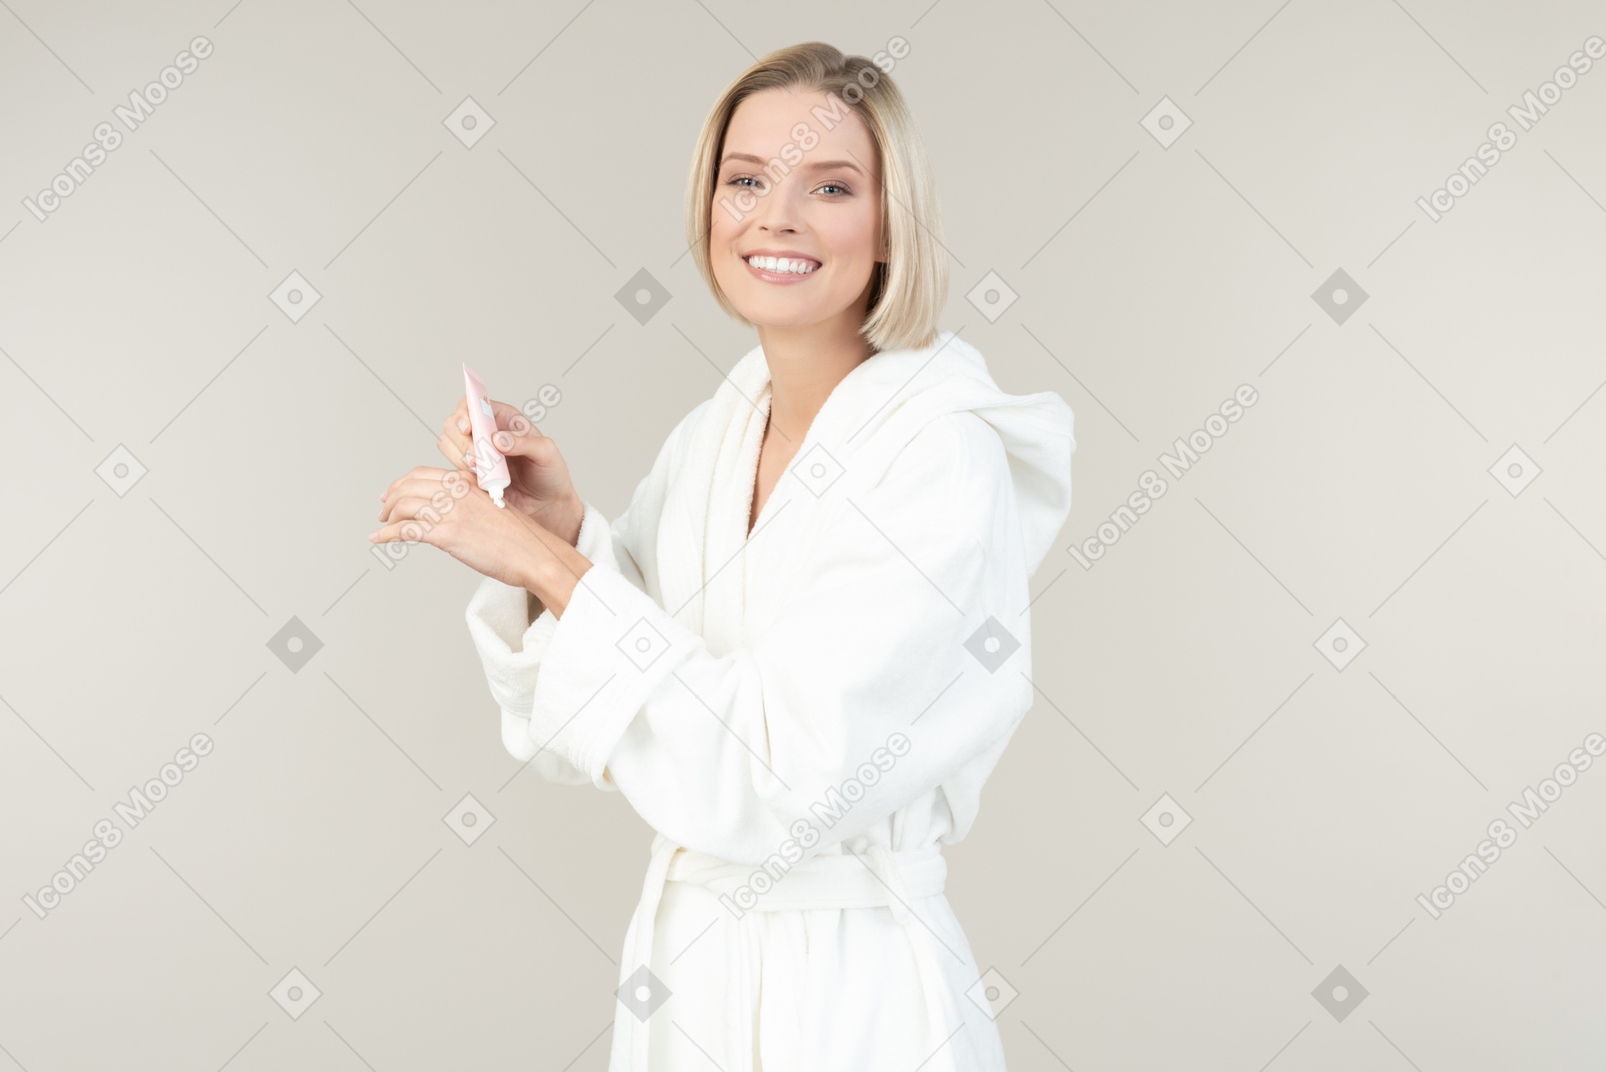 Giovane donna bionda in un accappatoio bianco in posa con tutti i tipi di articoli da toeletta